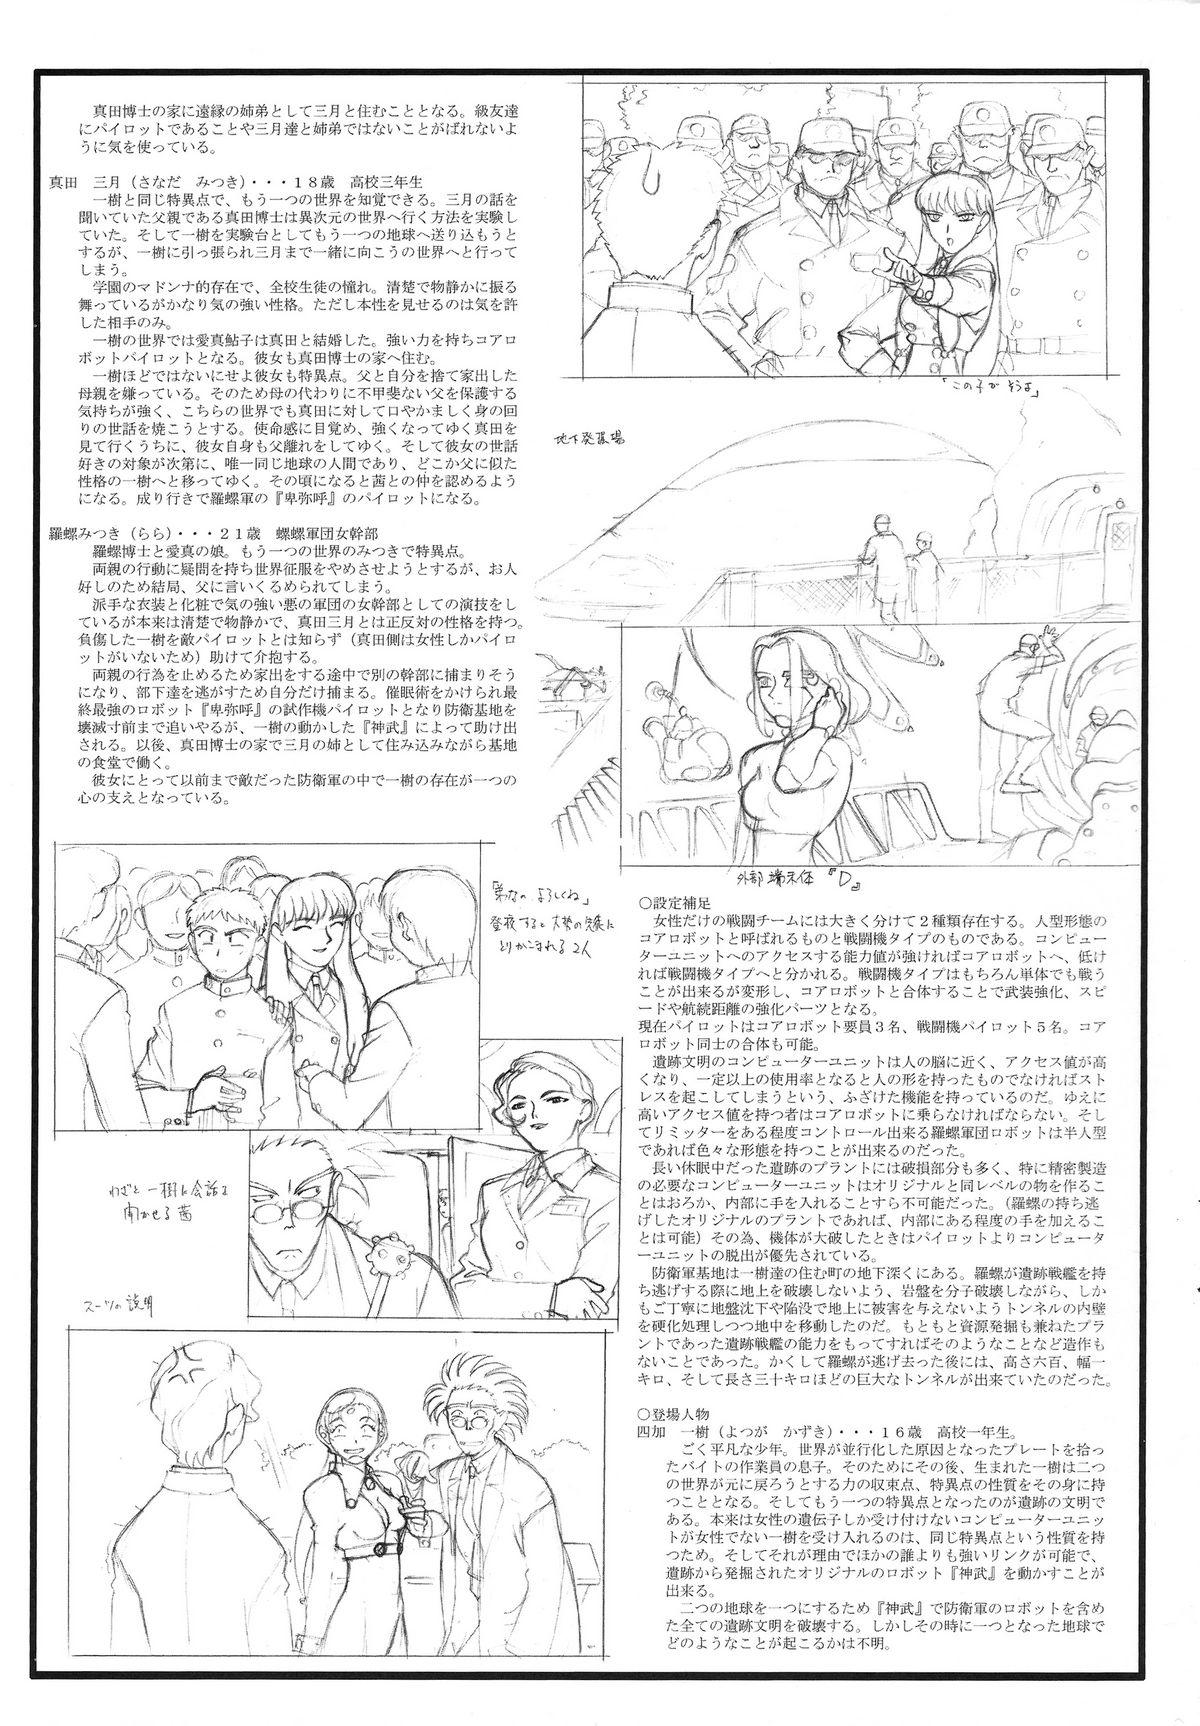 Imvu Omatsuri Zenjitsu no Yoru Heisei Ban 3 - Dual parallel trouble adventure Spaceship agga ruter Ride - Page 5